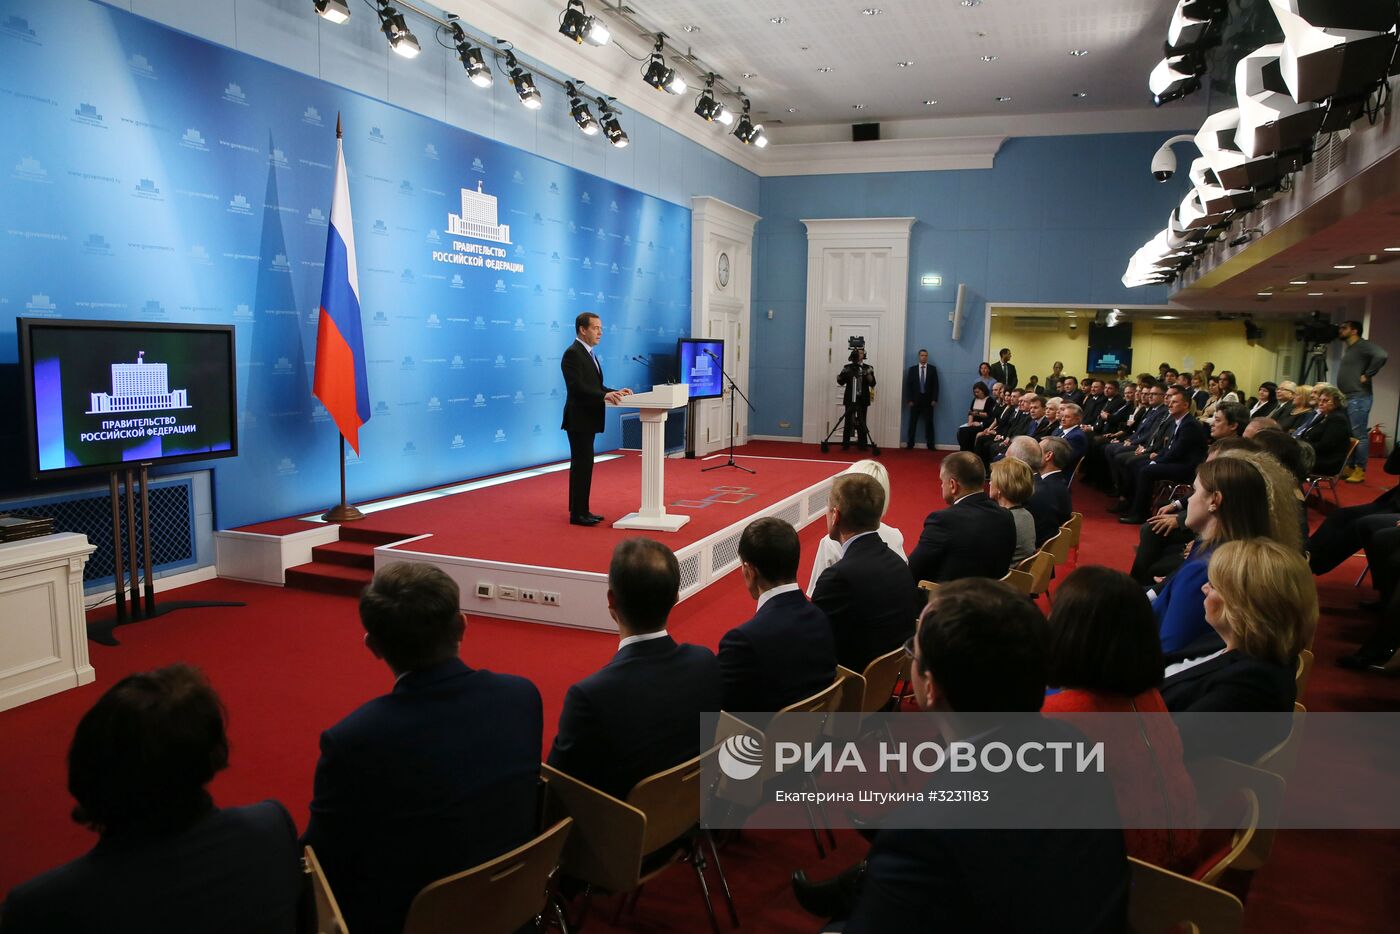 Премьер-министр РФ Д. Медведев вручил премии правительства РФ в области качества за 2017 год